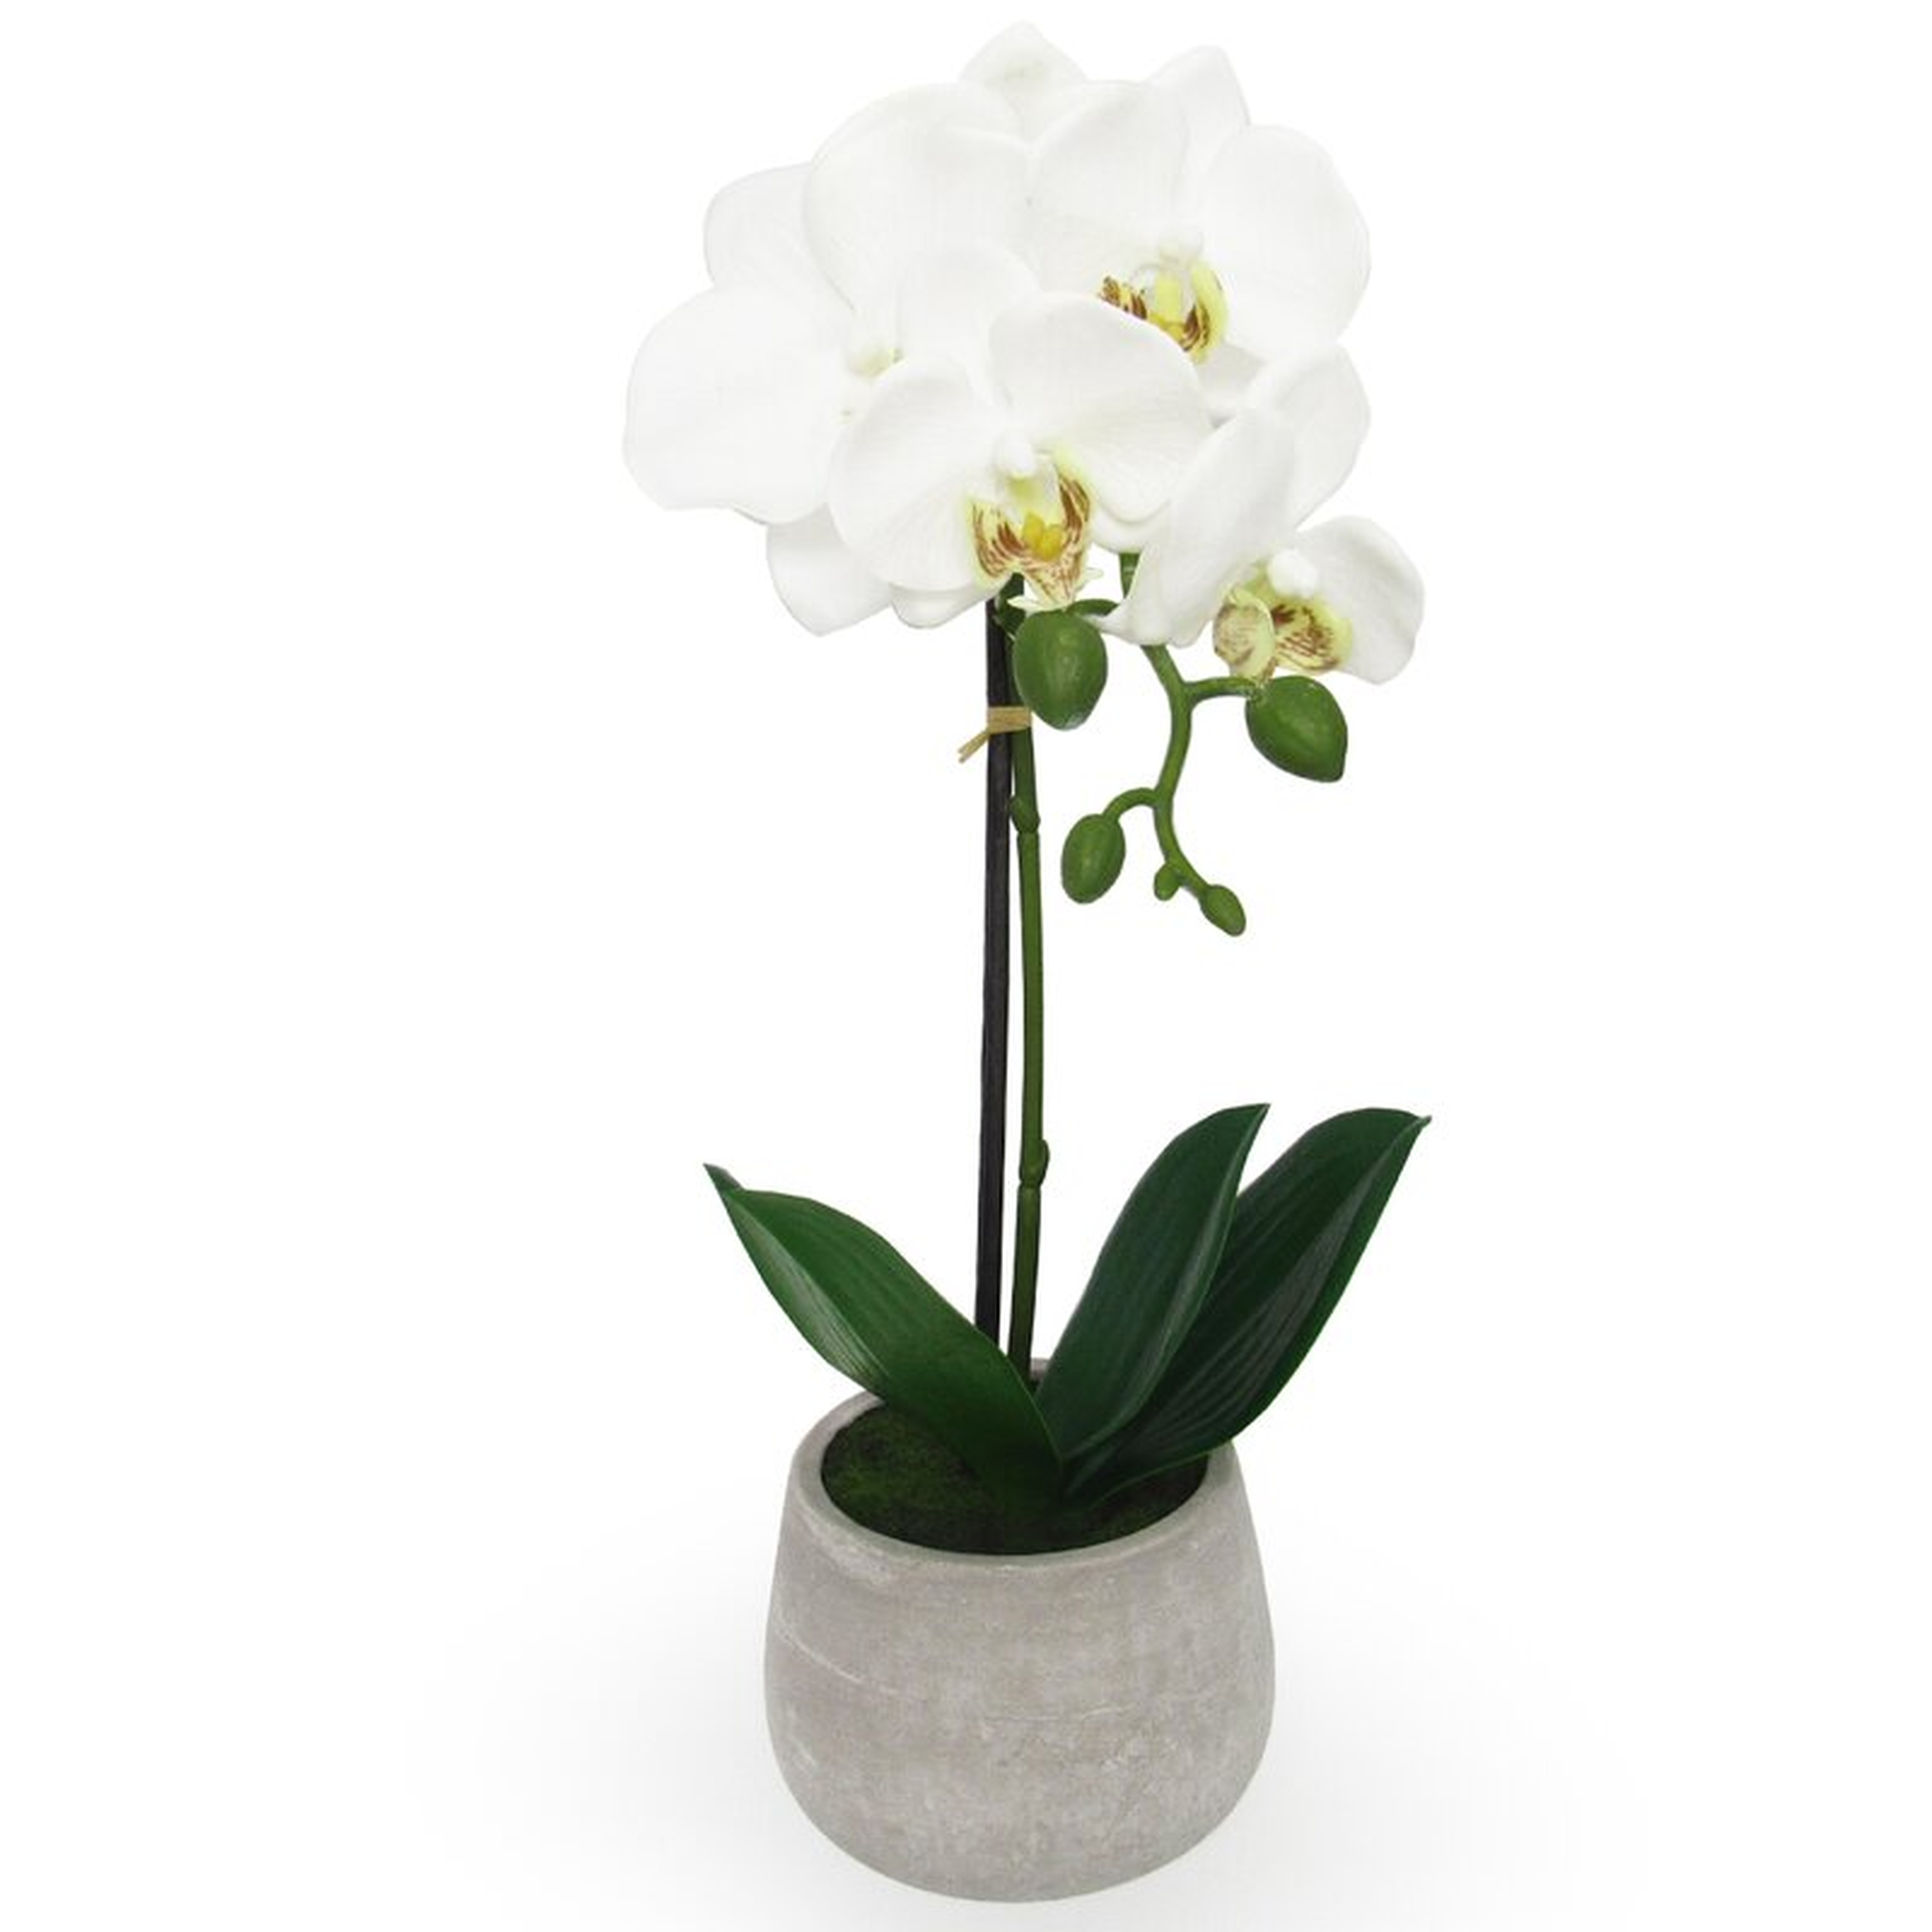 Phalaenopsis Orchids Floral Arrangements in Pot - Wayfair